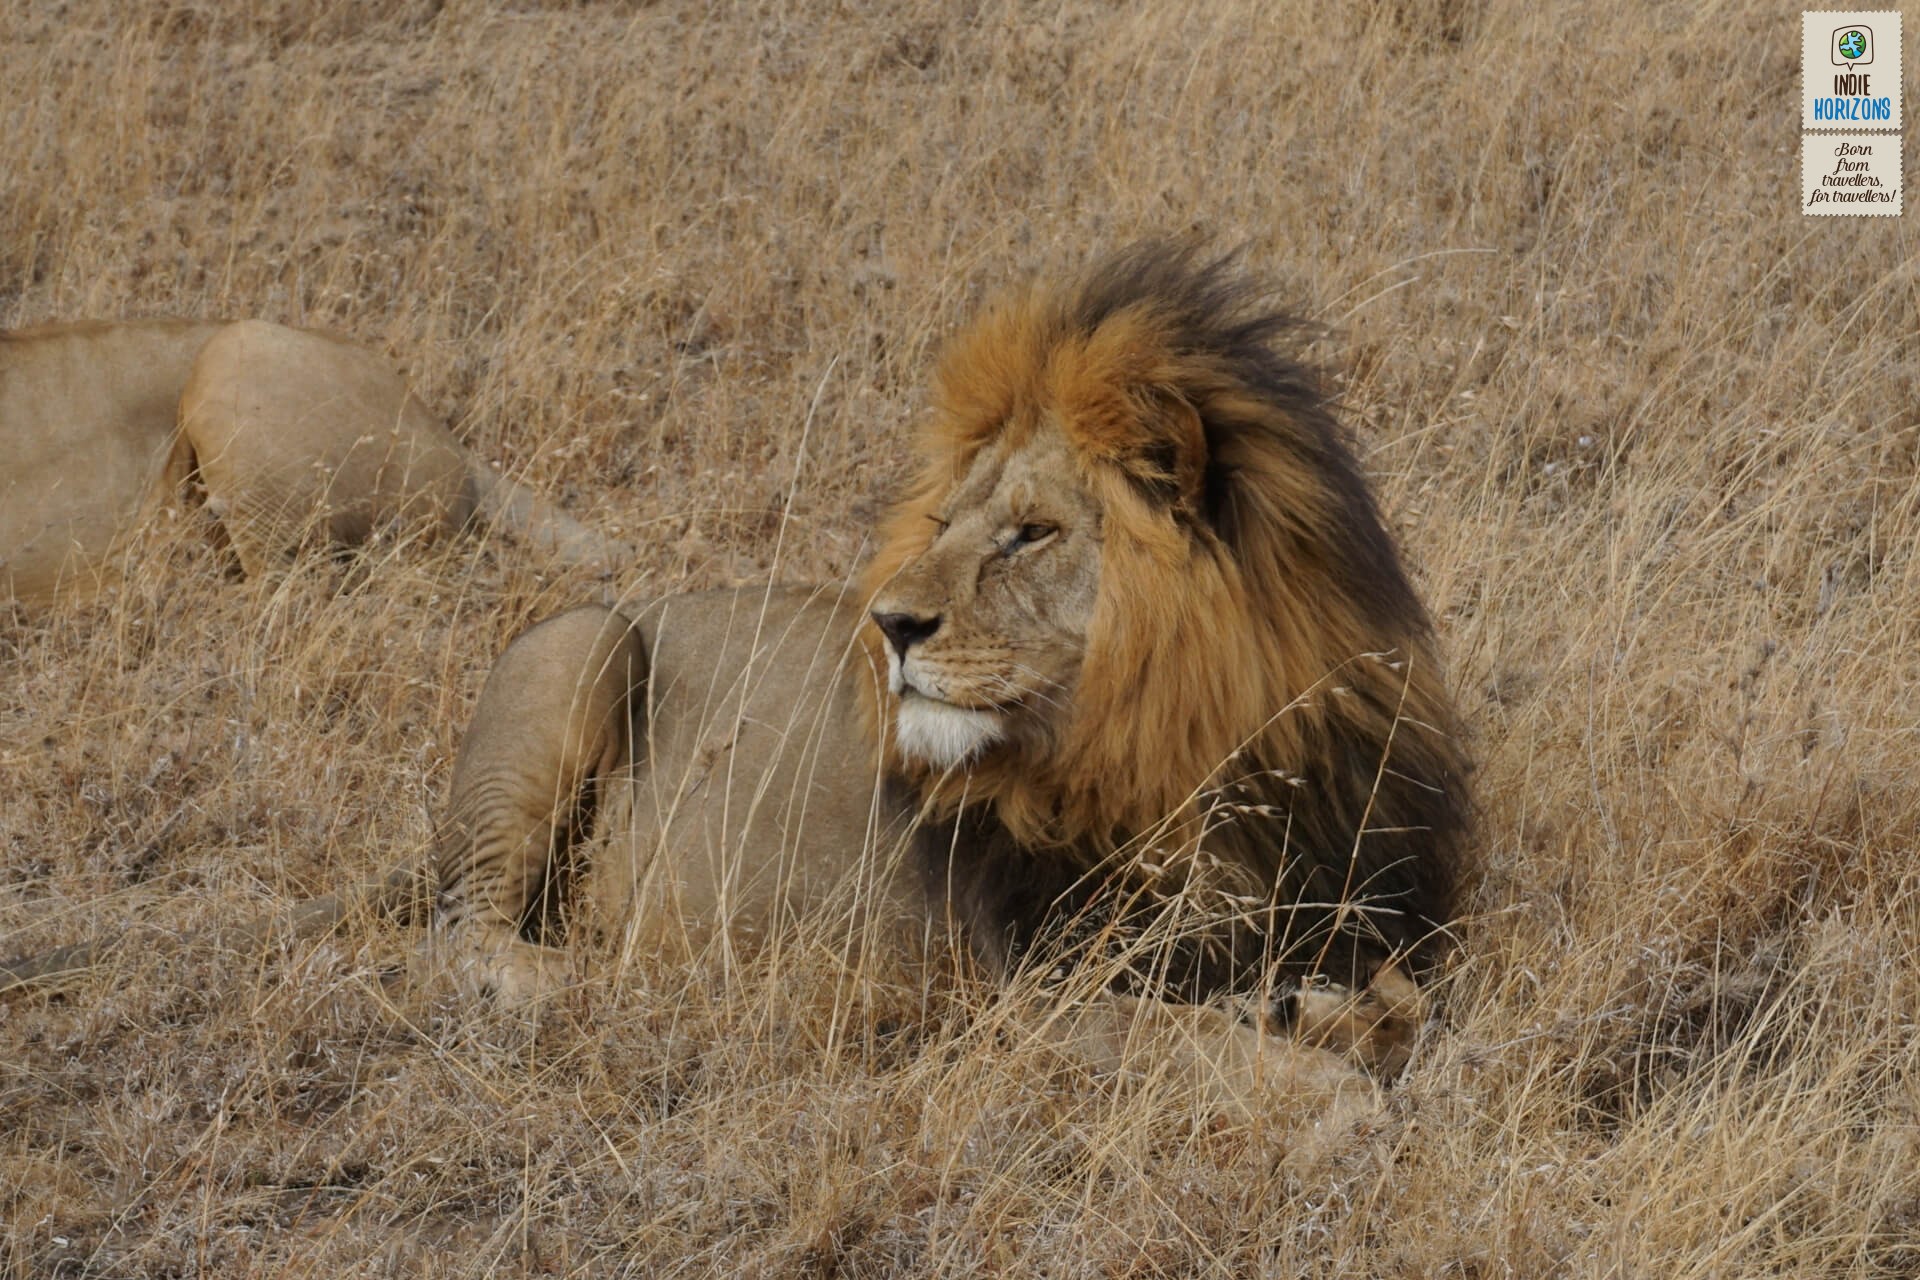 54. Tanzania, lion resting at Serengeti plains